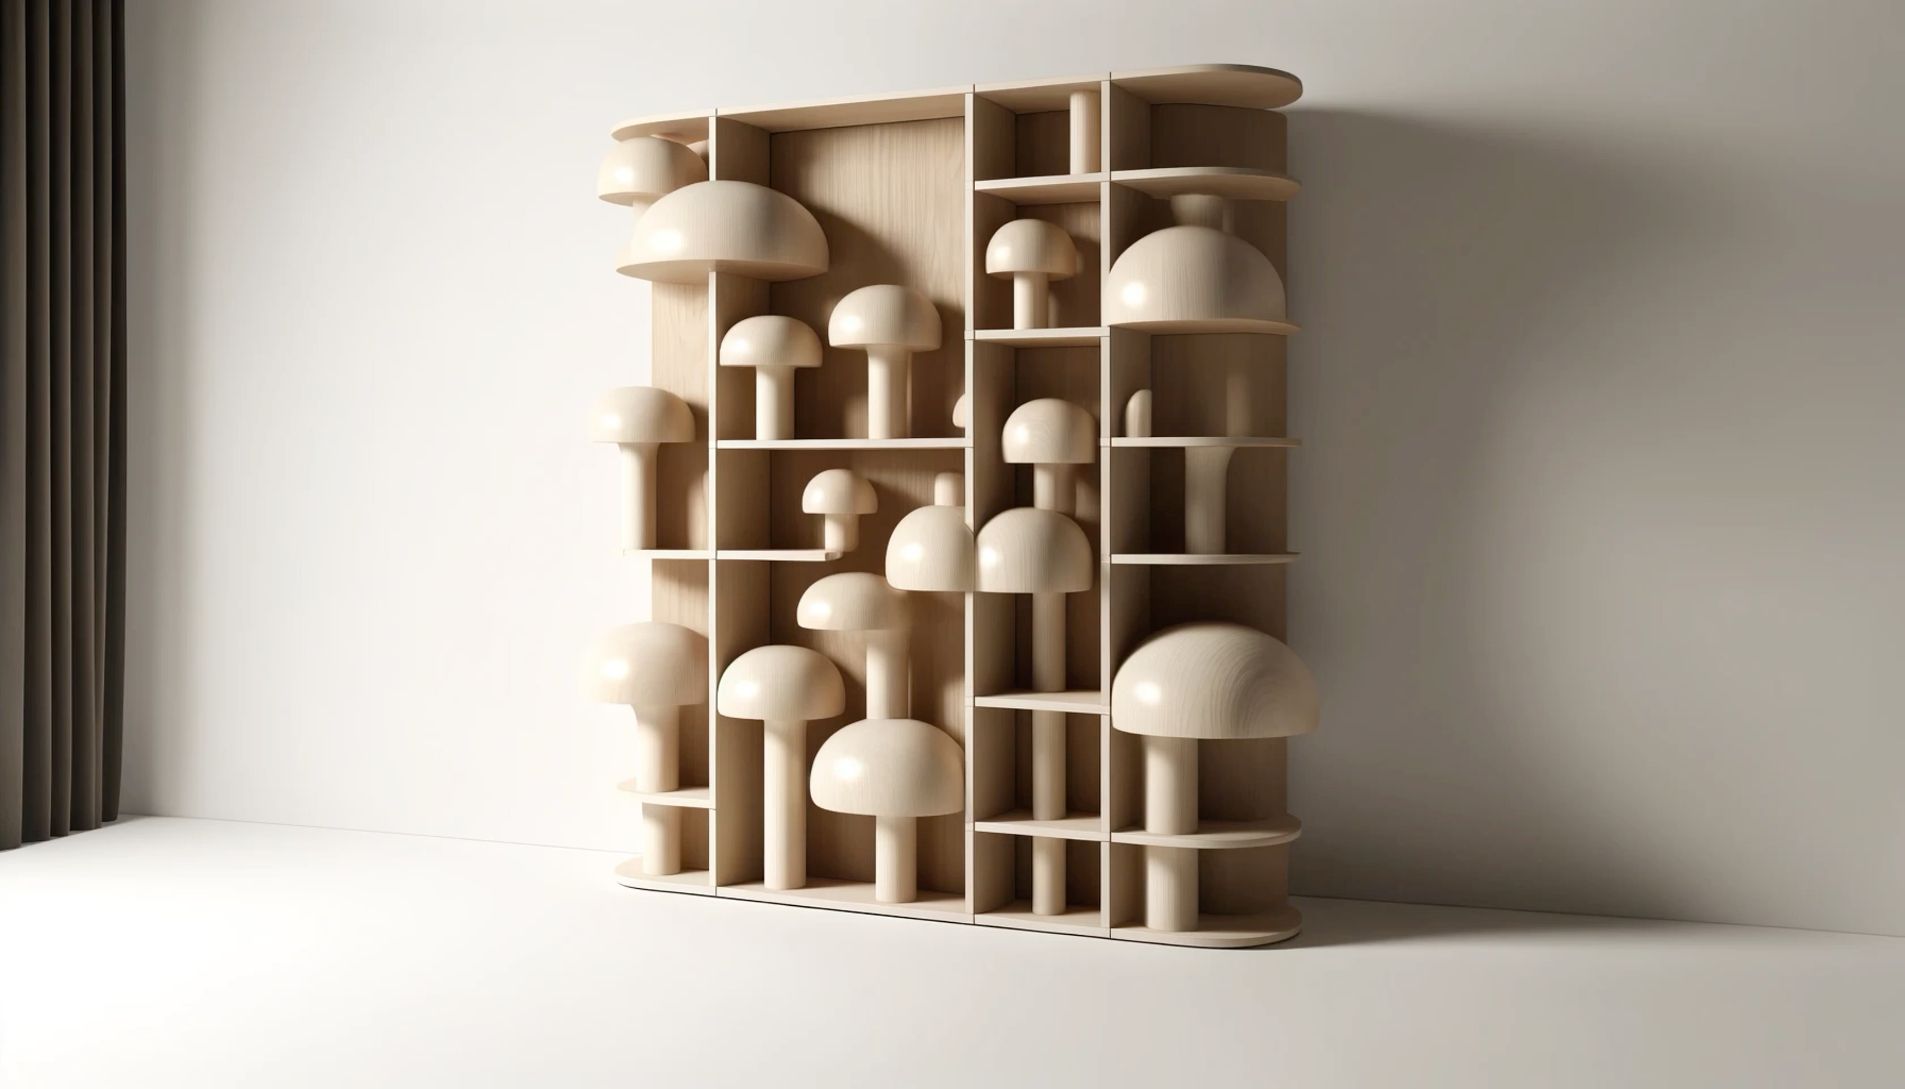 Creating a Minimalist Mushroom House